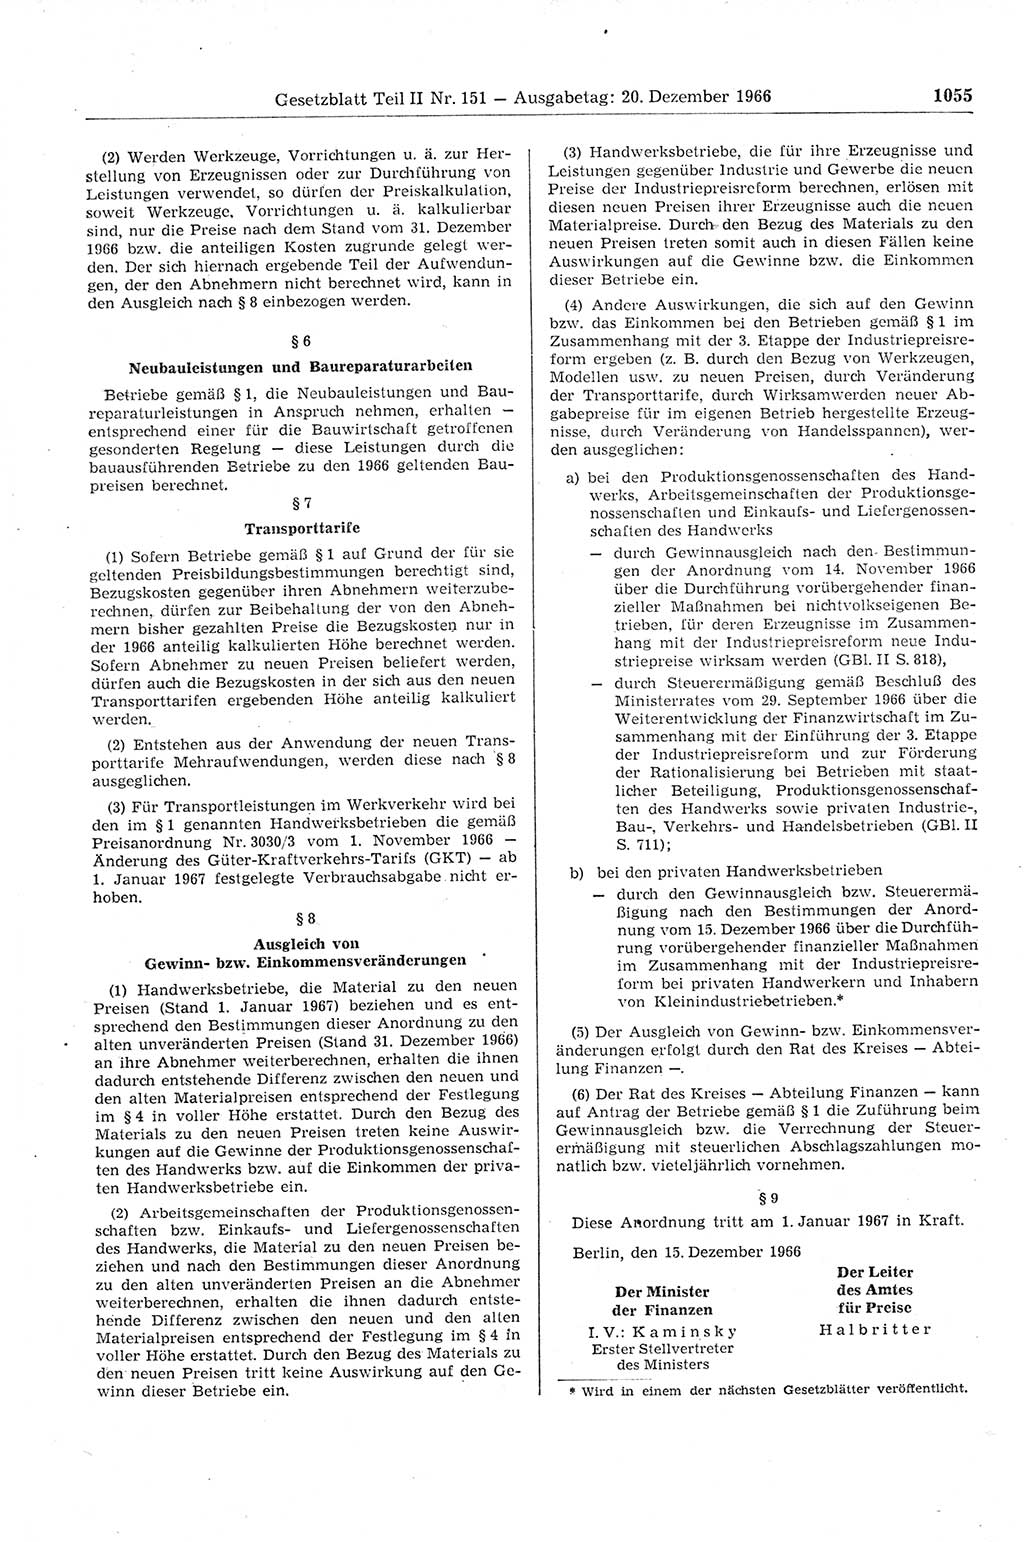 Gesetzblatt (GBl.) der Deutschen Demokratischen Republik (DDR) Teil ⅠⅠ 1966, Seite 1055 (GBl. DDR ⅠⅠ 1966, S. 1055)